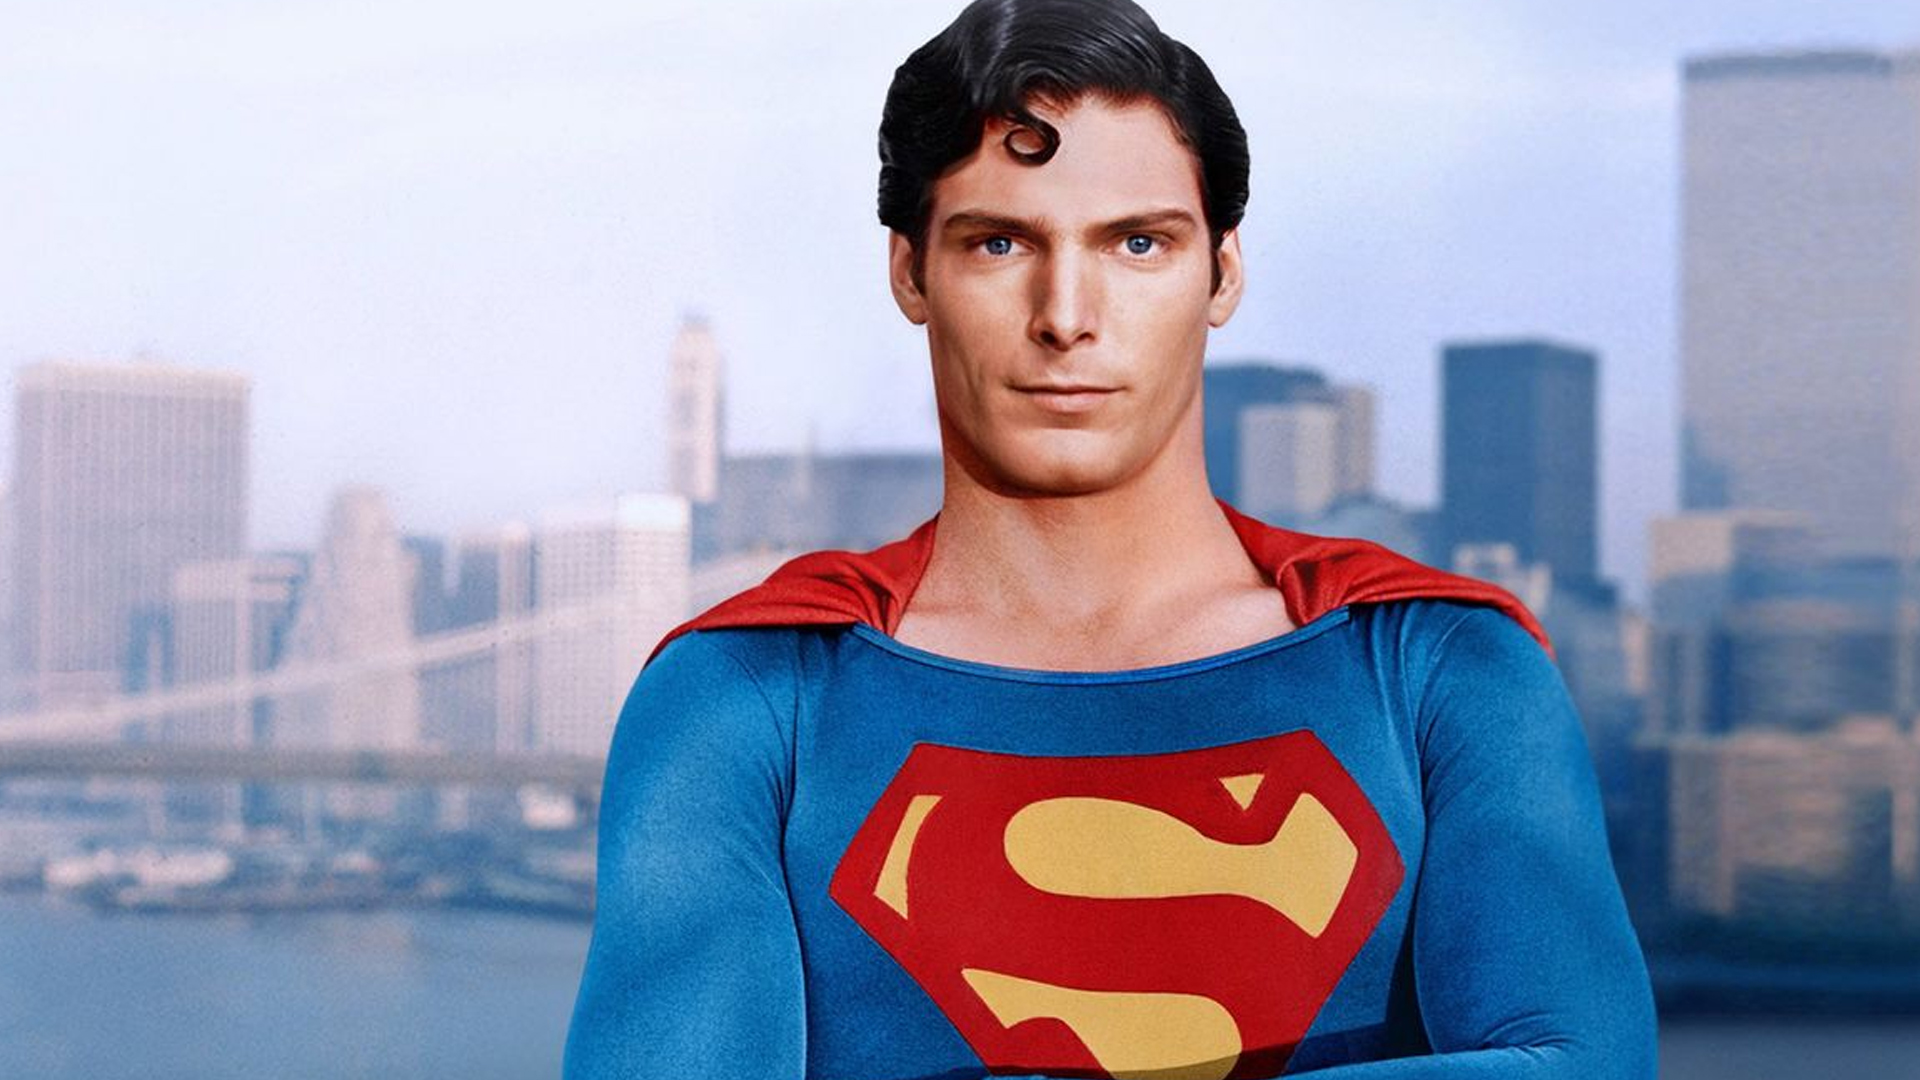 DC Digital encomenda série live-action “Metropolis” sem o Superman